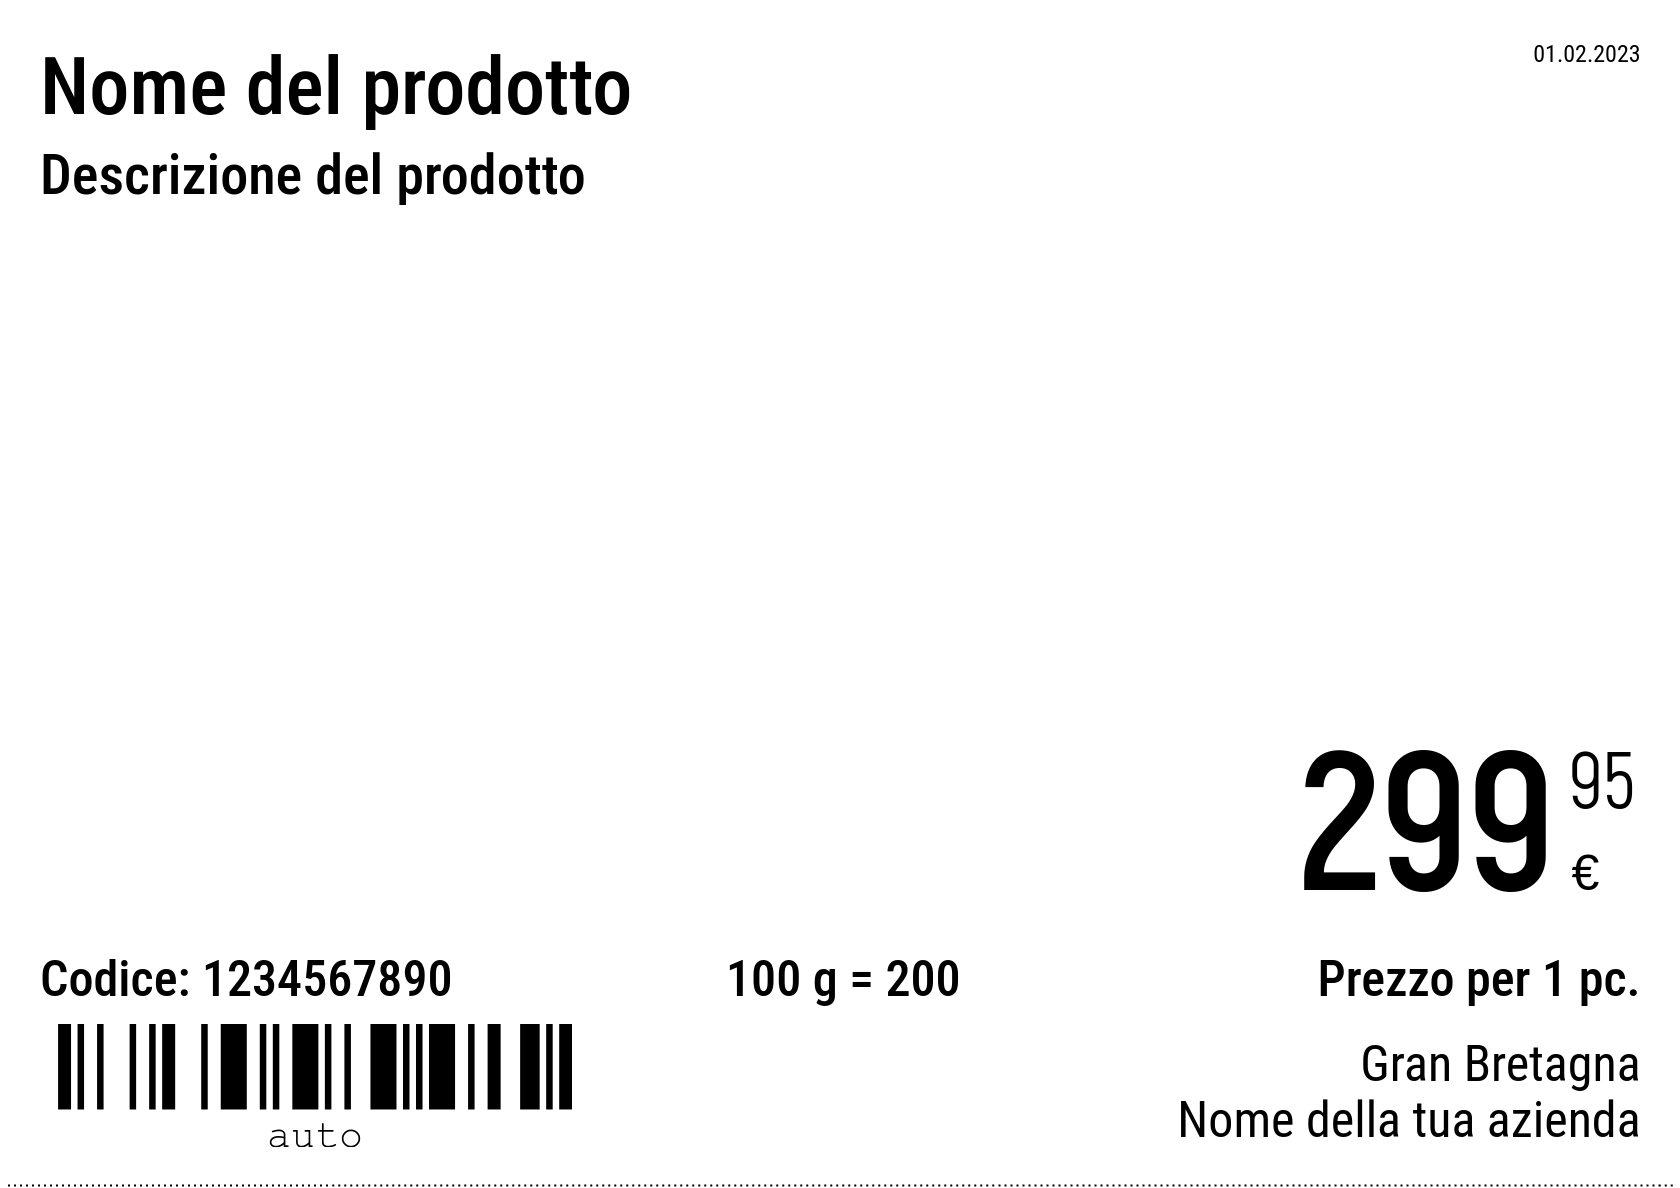 Prezzo Nuovo / A5 (mezzo foglio A4) / Normale